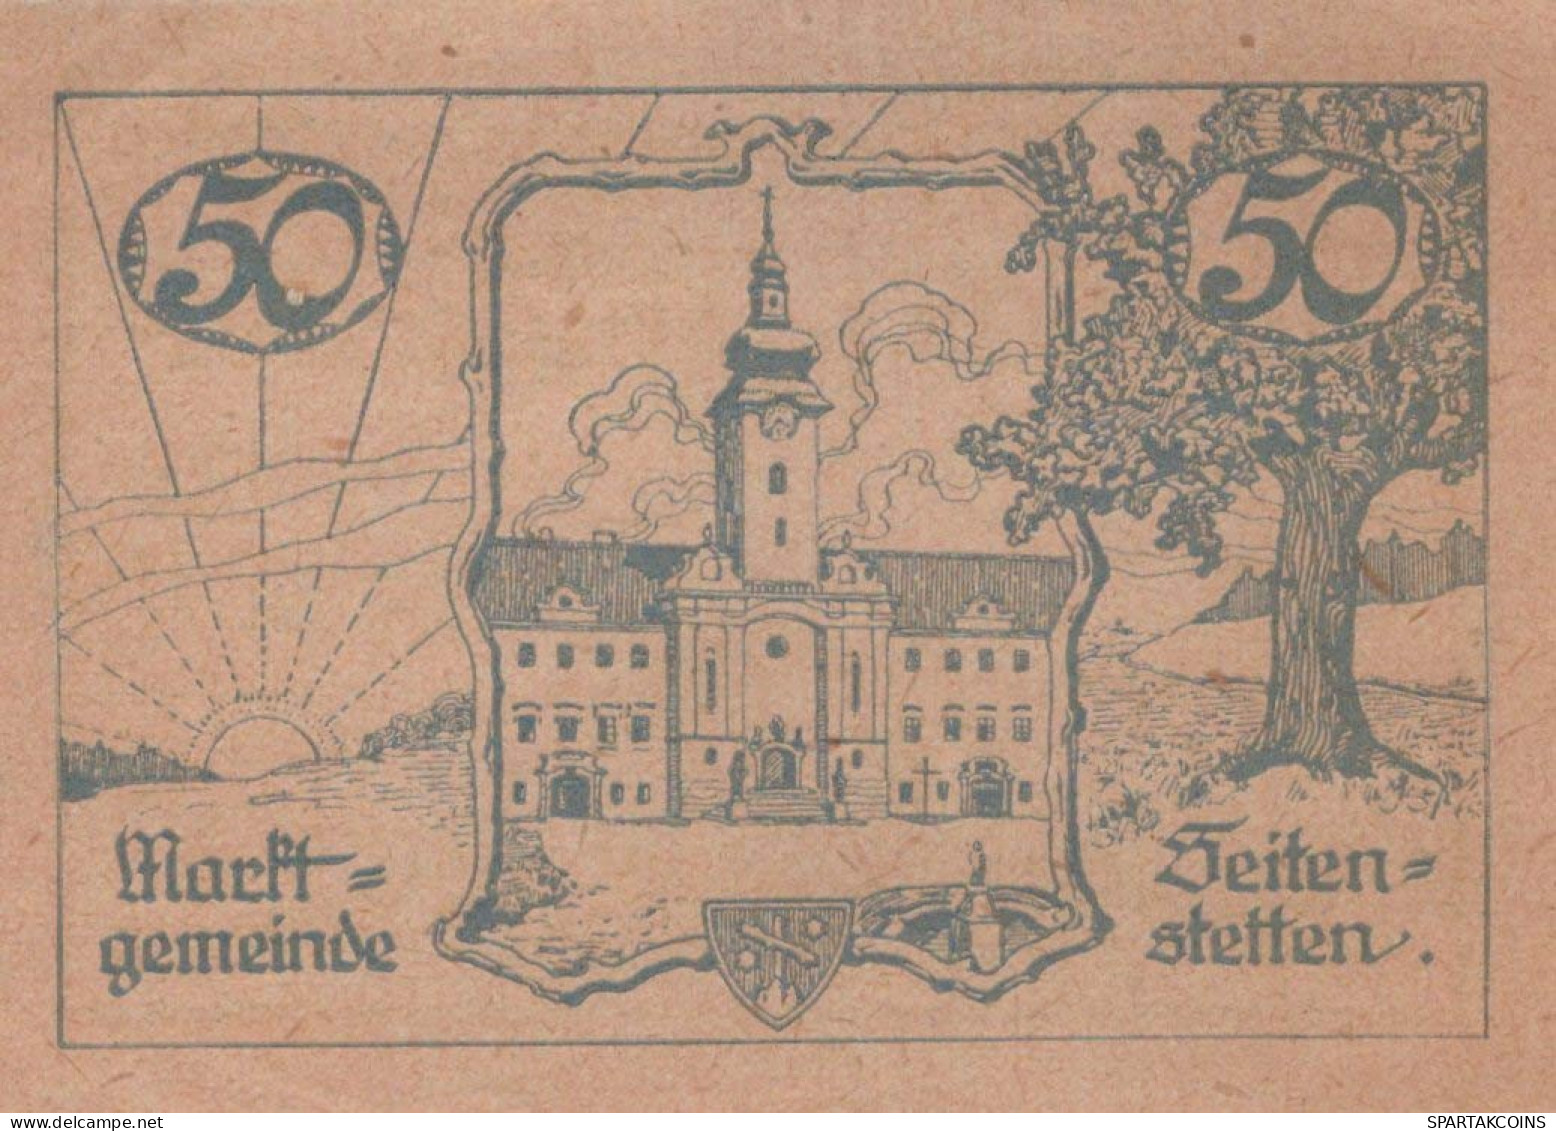 50 HELLER 1920 Stadt SEITENSTETTEN Niedrigeren Österreich UNC Österreich Notgeld #PH399 - [11] Emissions Locales